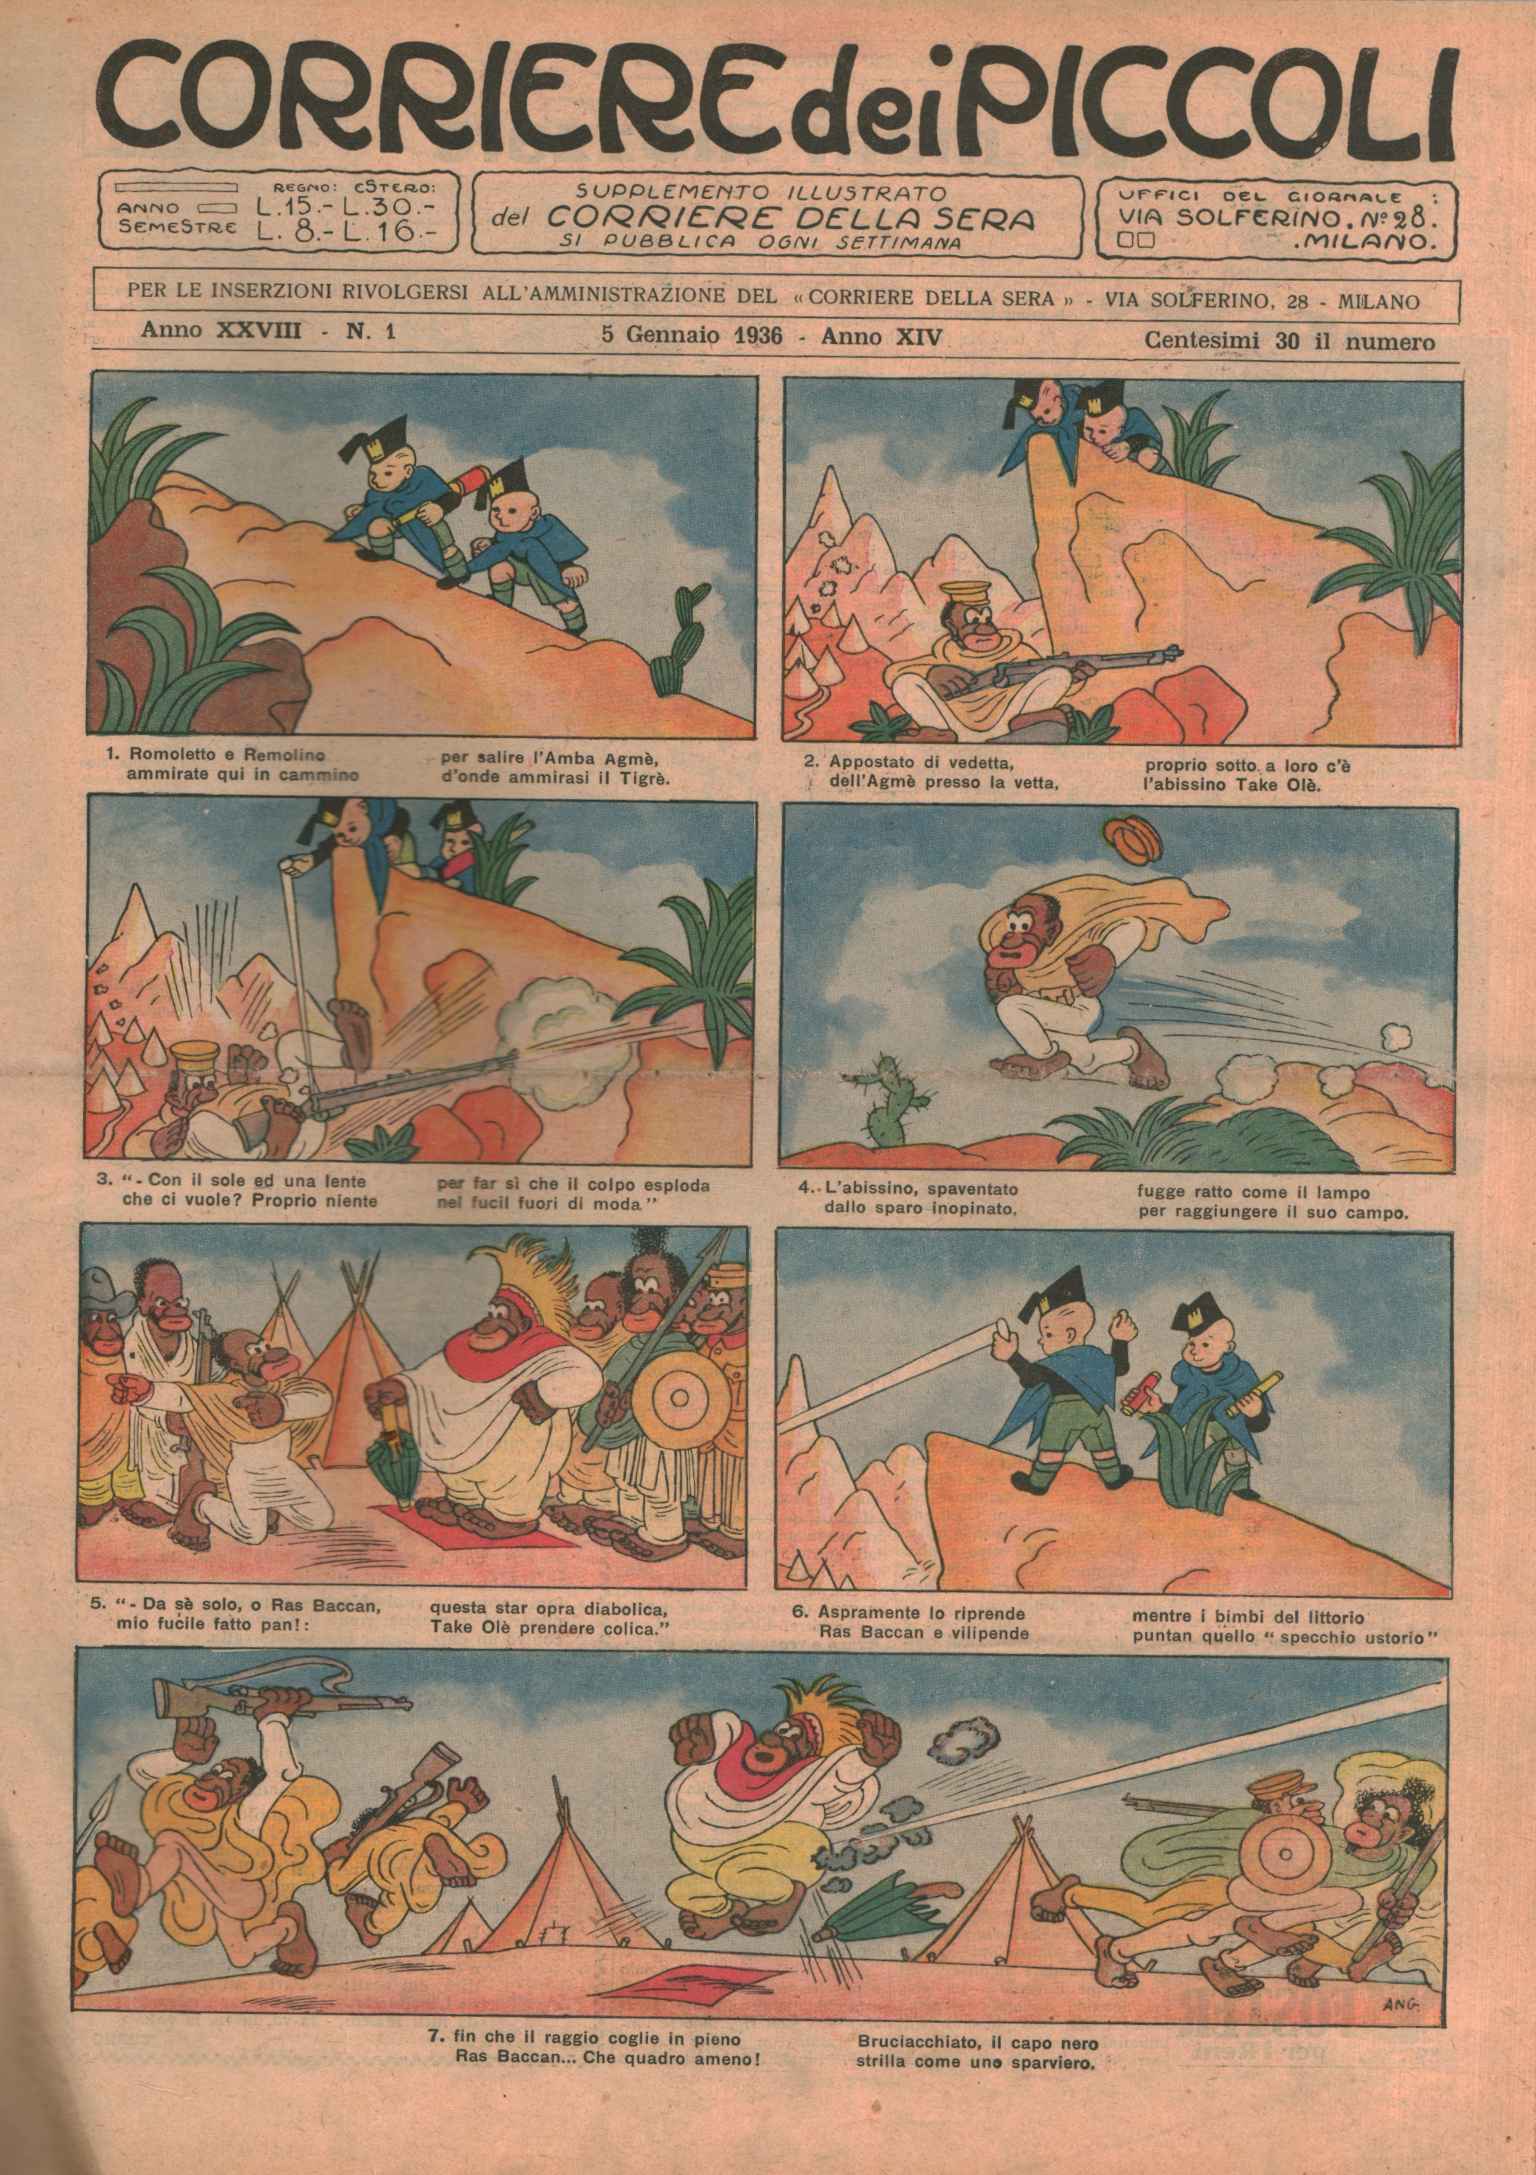 Corriere dei piccolo 1936 (52 numéros -, Corriere dei piccolo 1936. Année complète